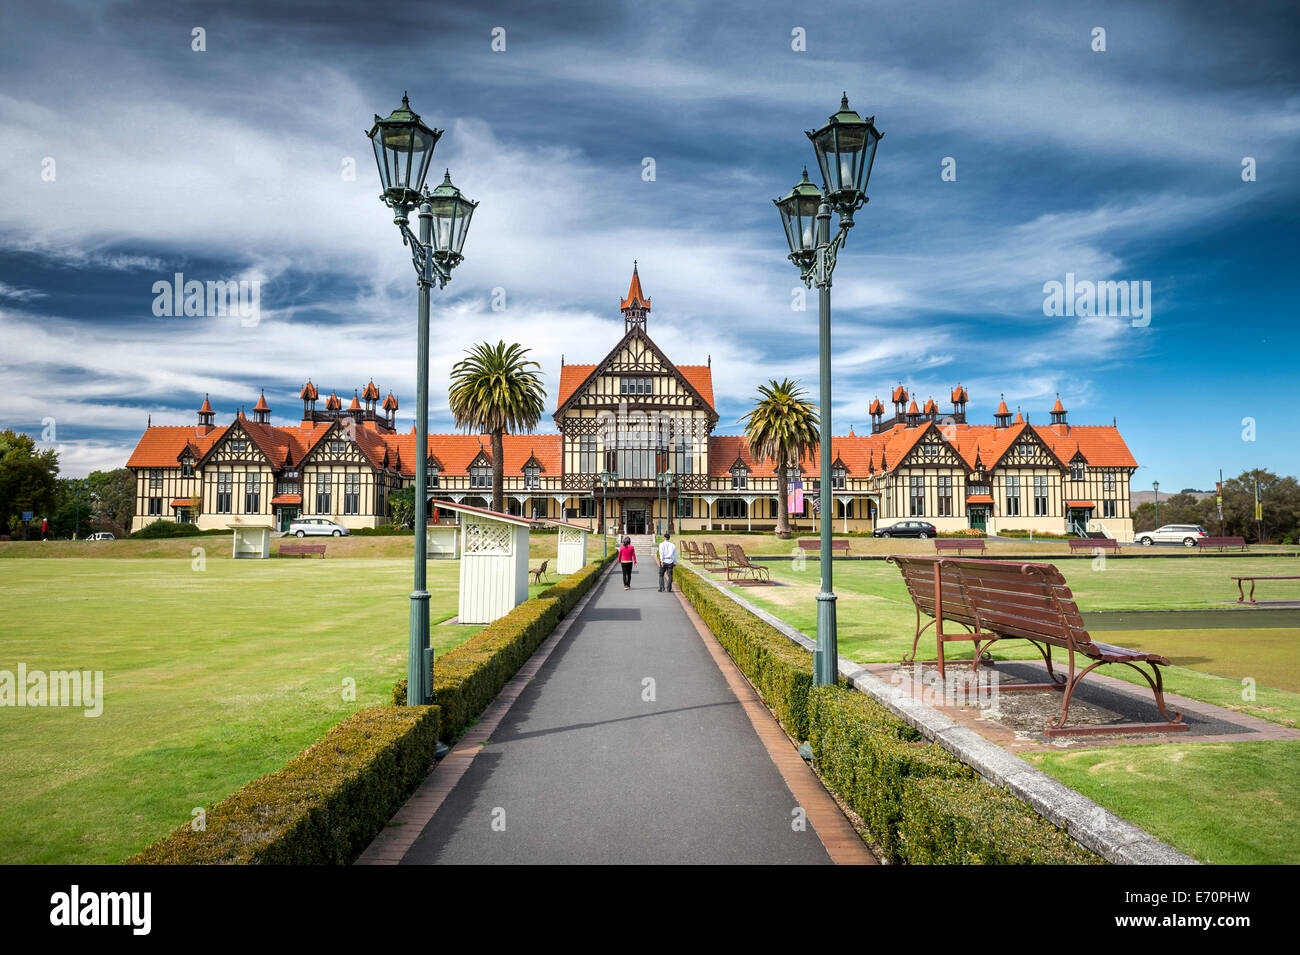 Bathhouse dans le jardins du gouvernement, Rotorua, Musée d'art et d'histoire, des lanternes à l'avant, Rotorua, île du Nord, Nouvelle-Zélande Banque D'Images